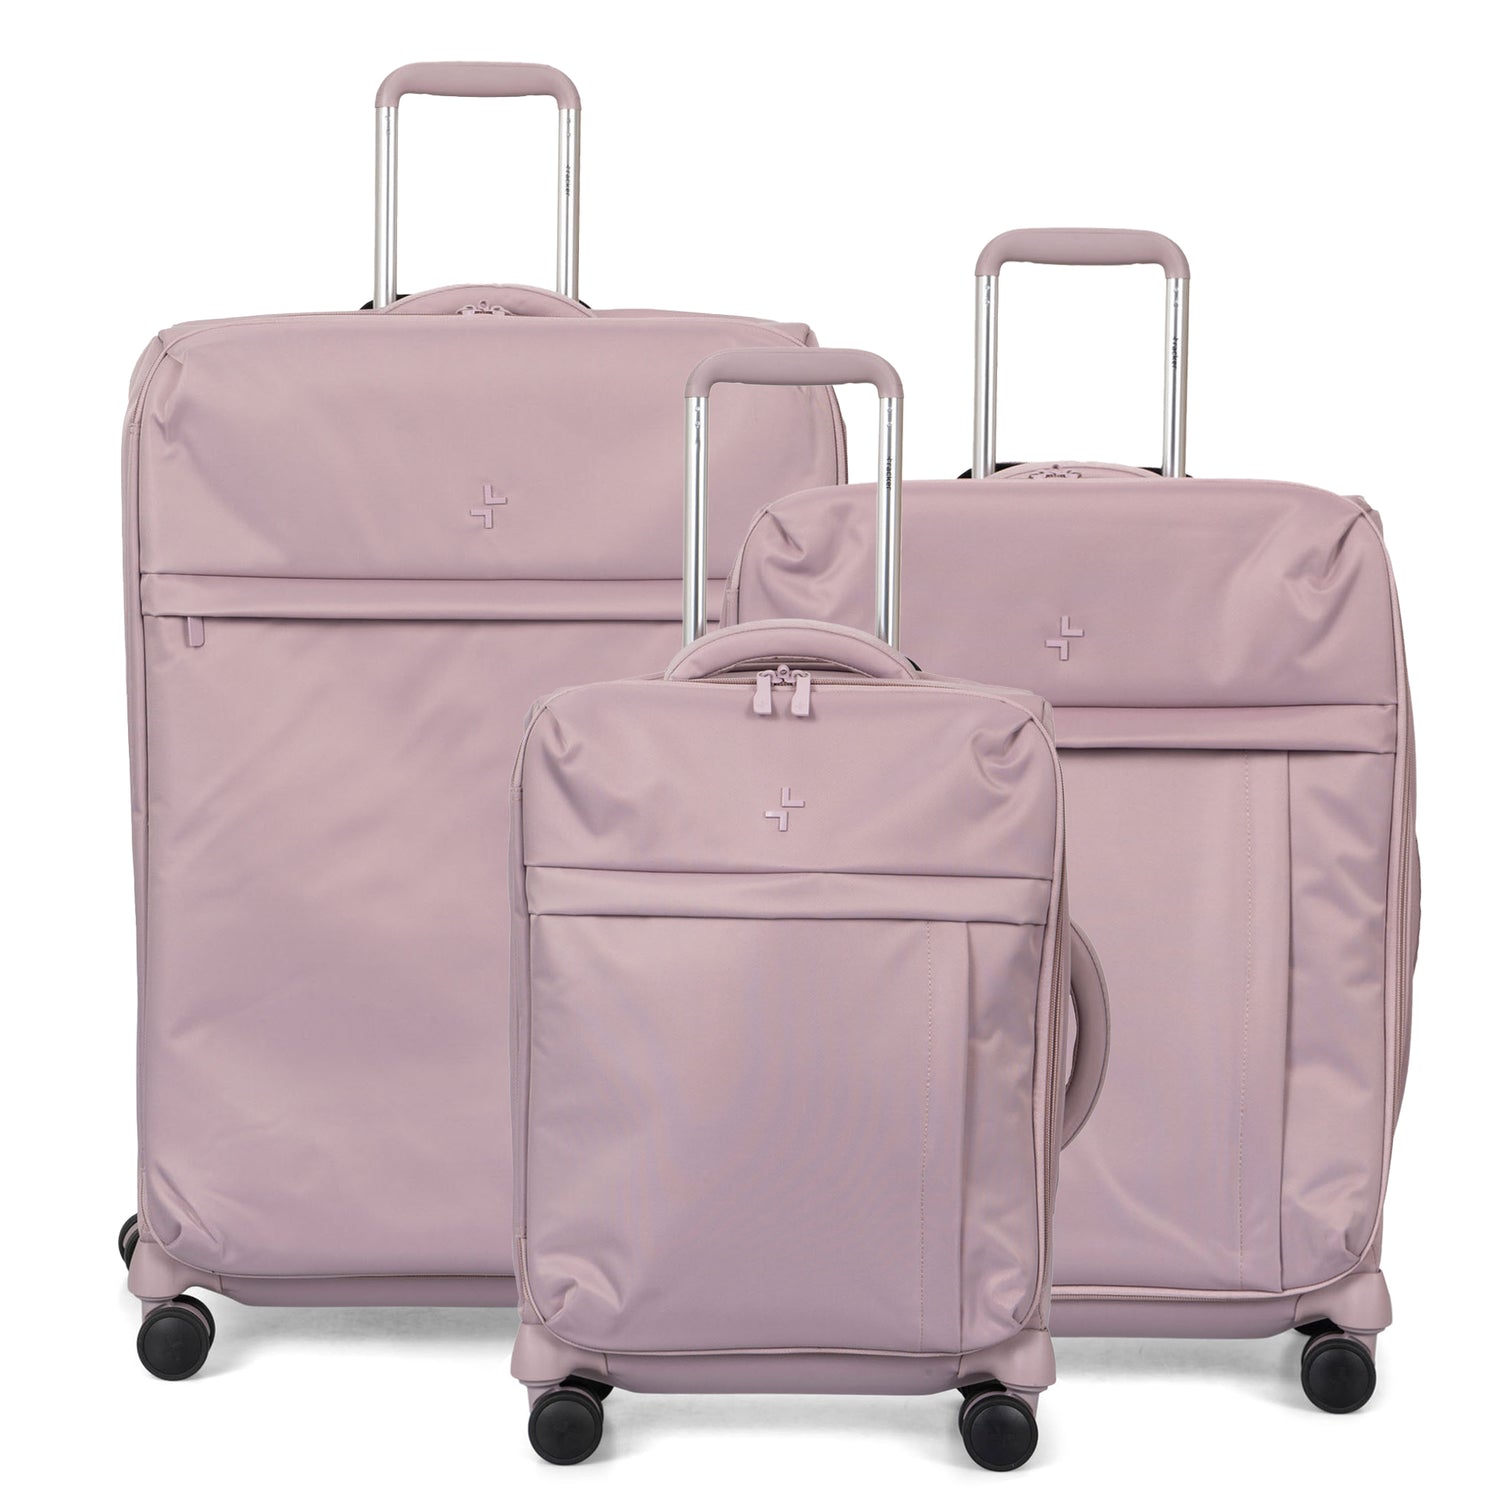 Nuage Softside 3-Piece Luggage Set